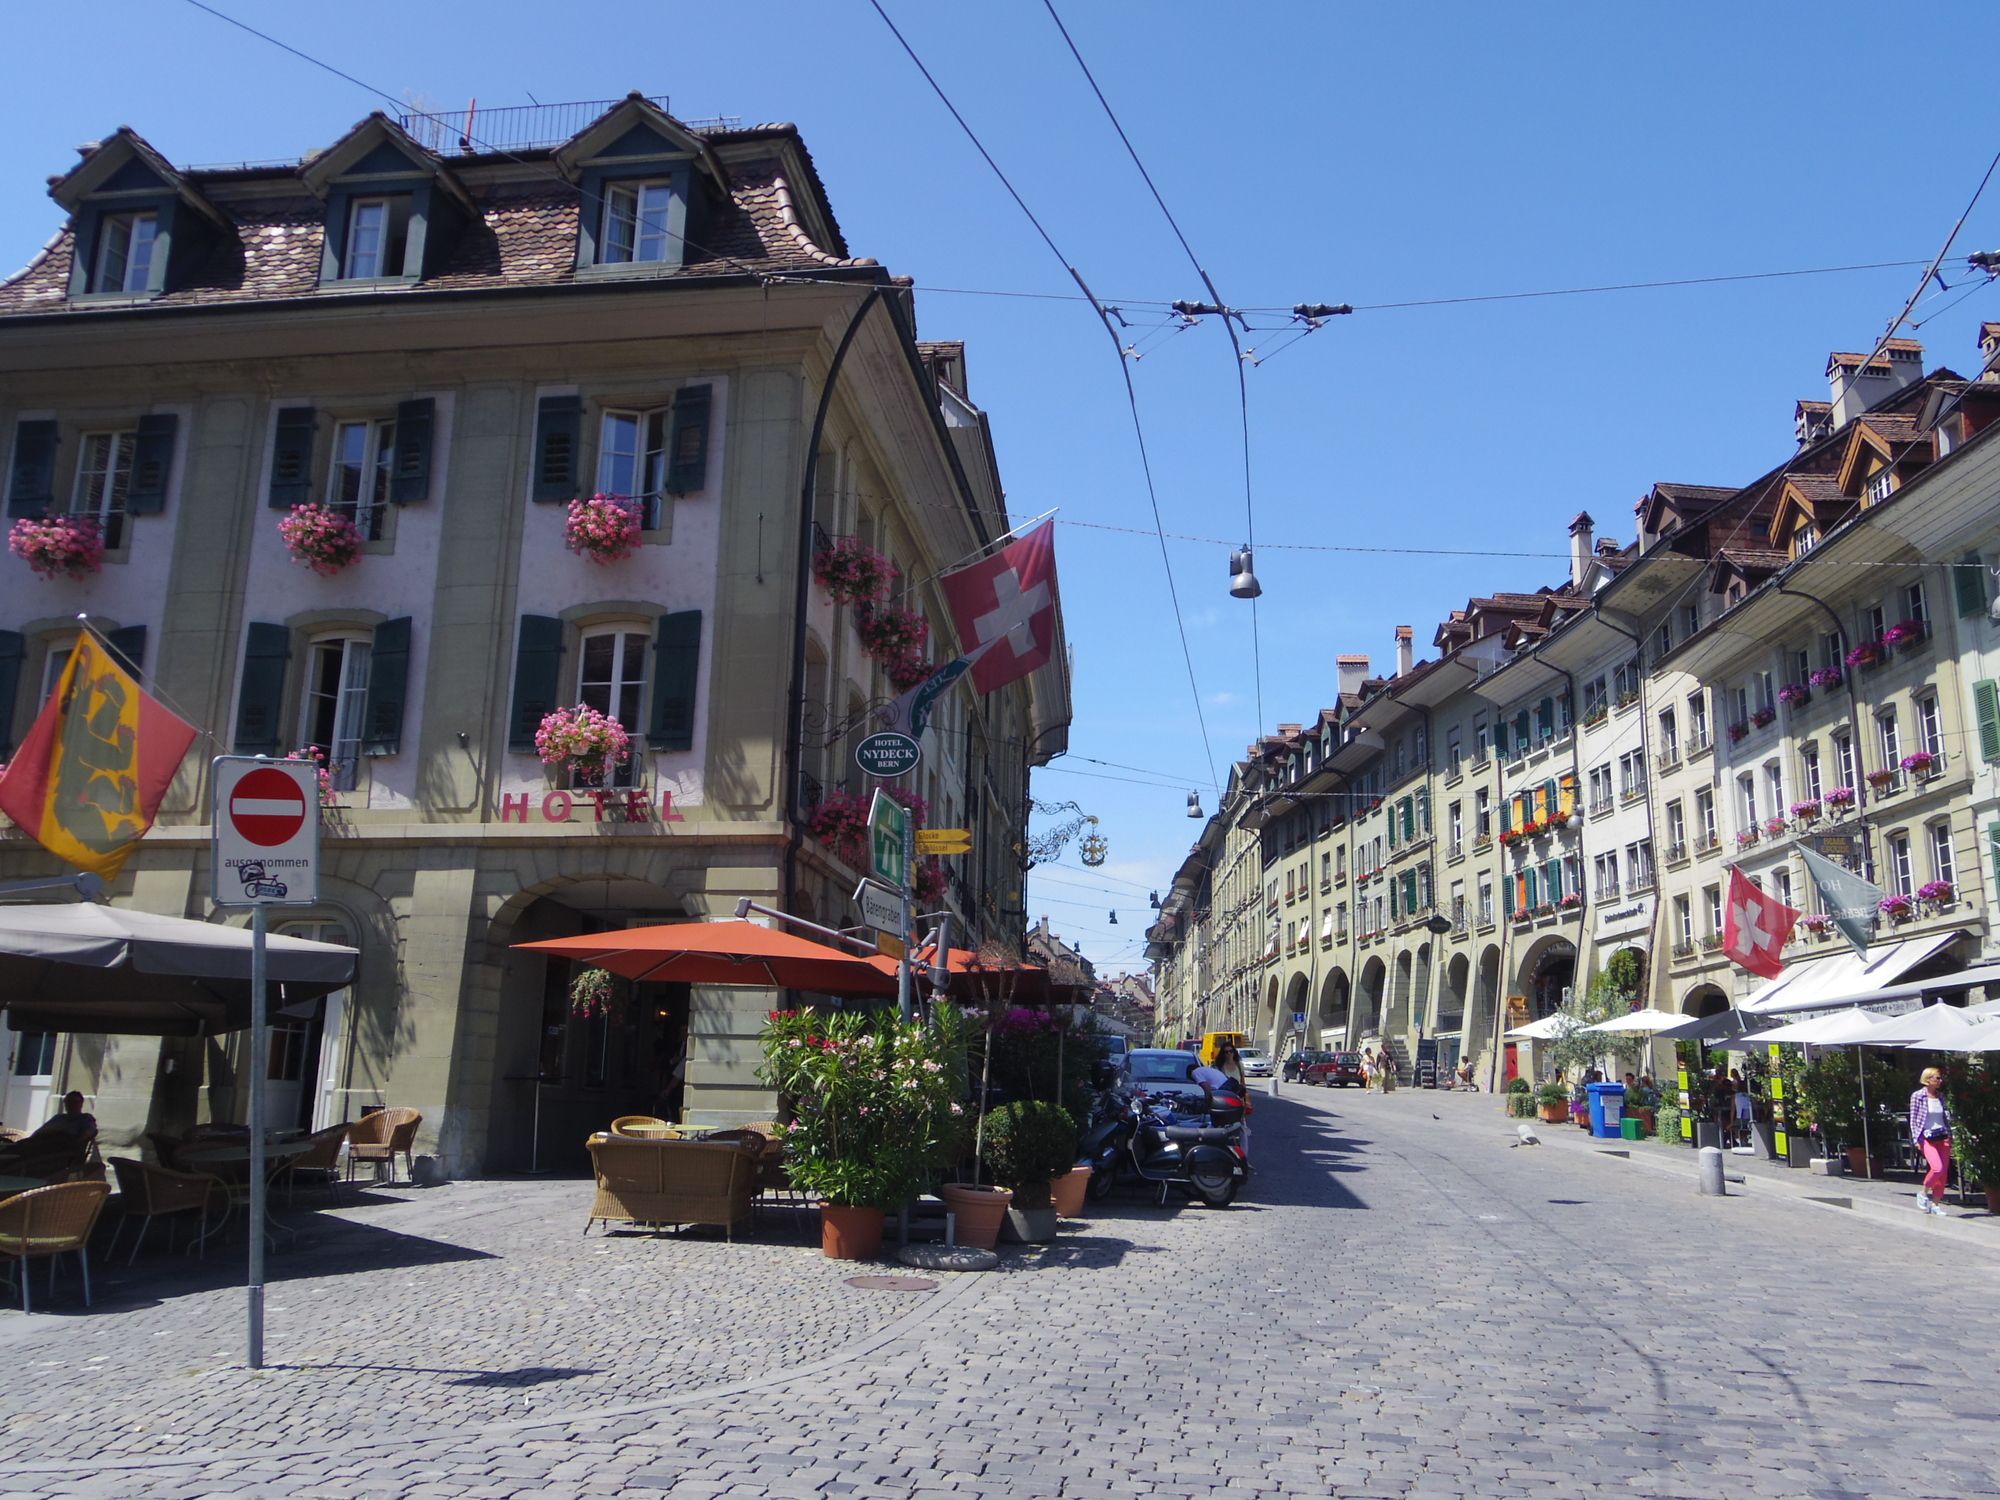 スイスのおすすめ観光地20選！ マッターホルンなど登山家がうなるスポットを紹介